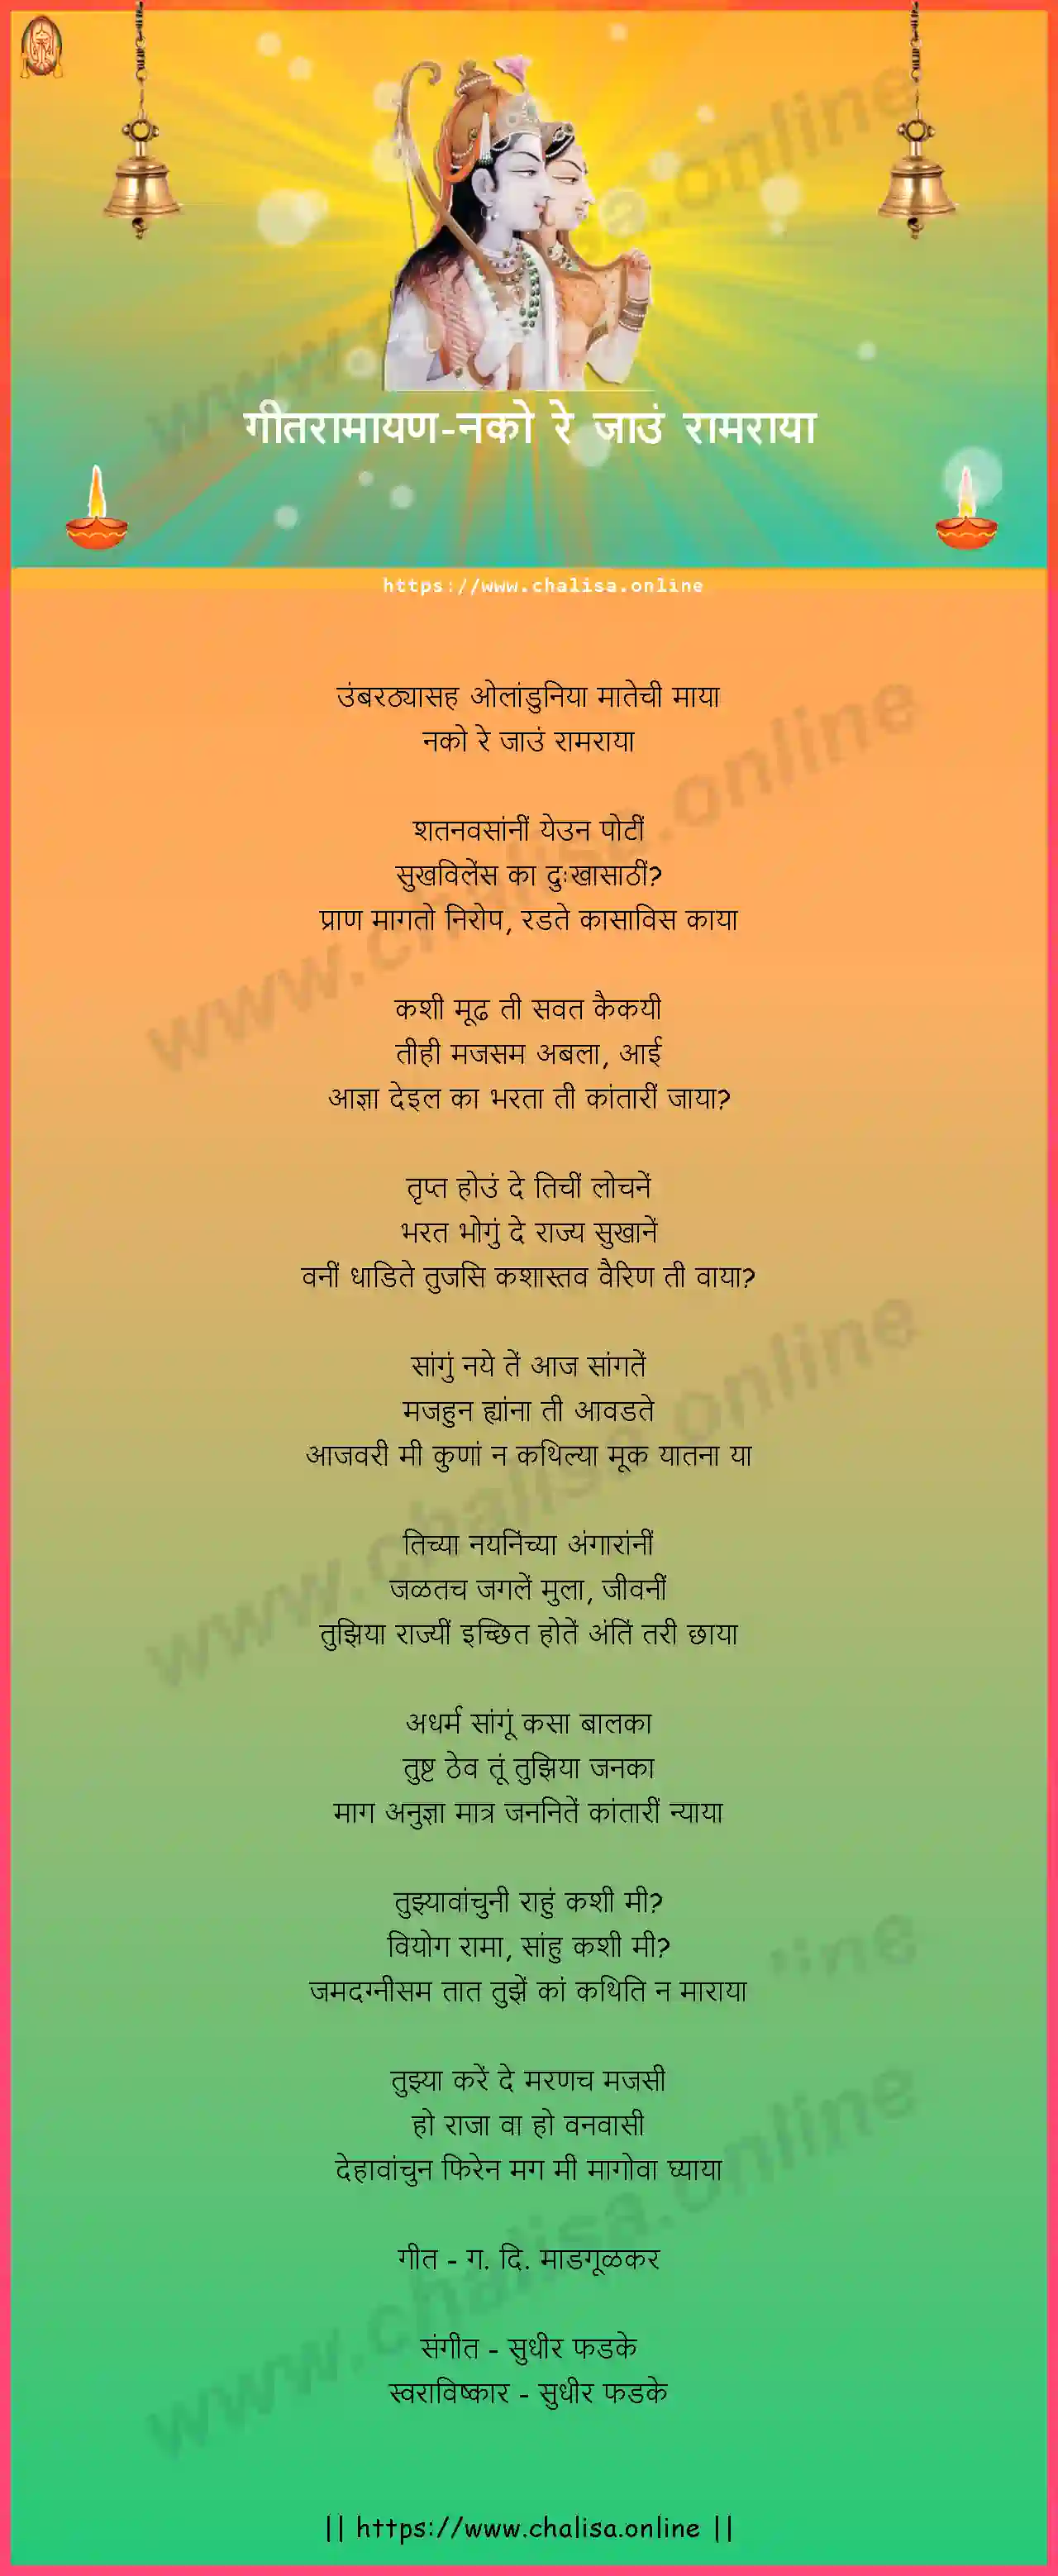 nako-re-jau-ram-raya-geet-ramayan-marathi-lyrics-download